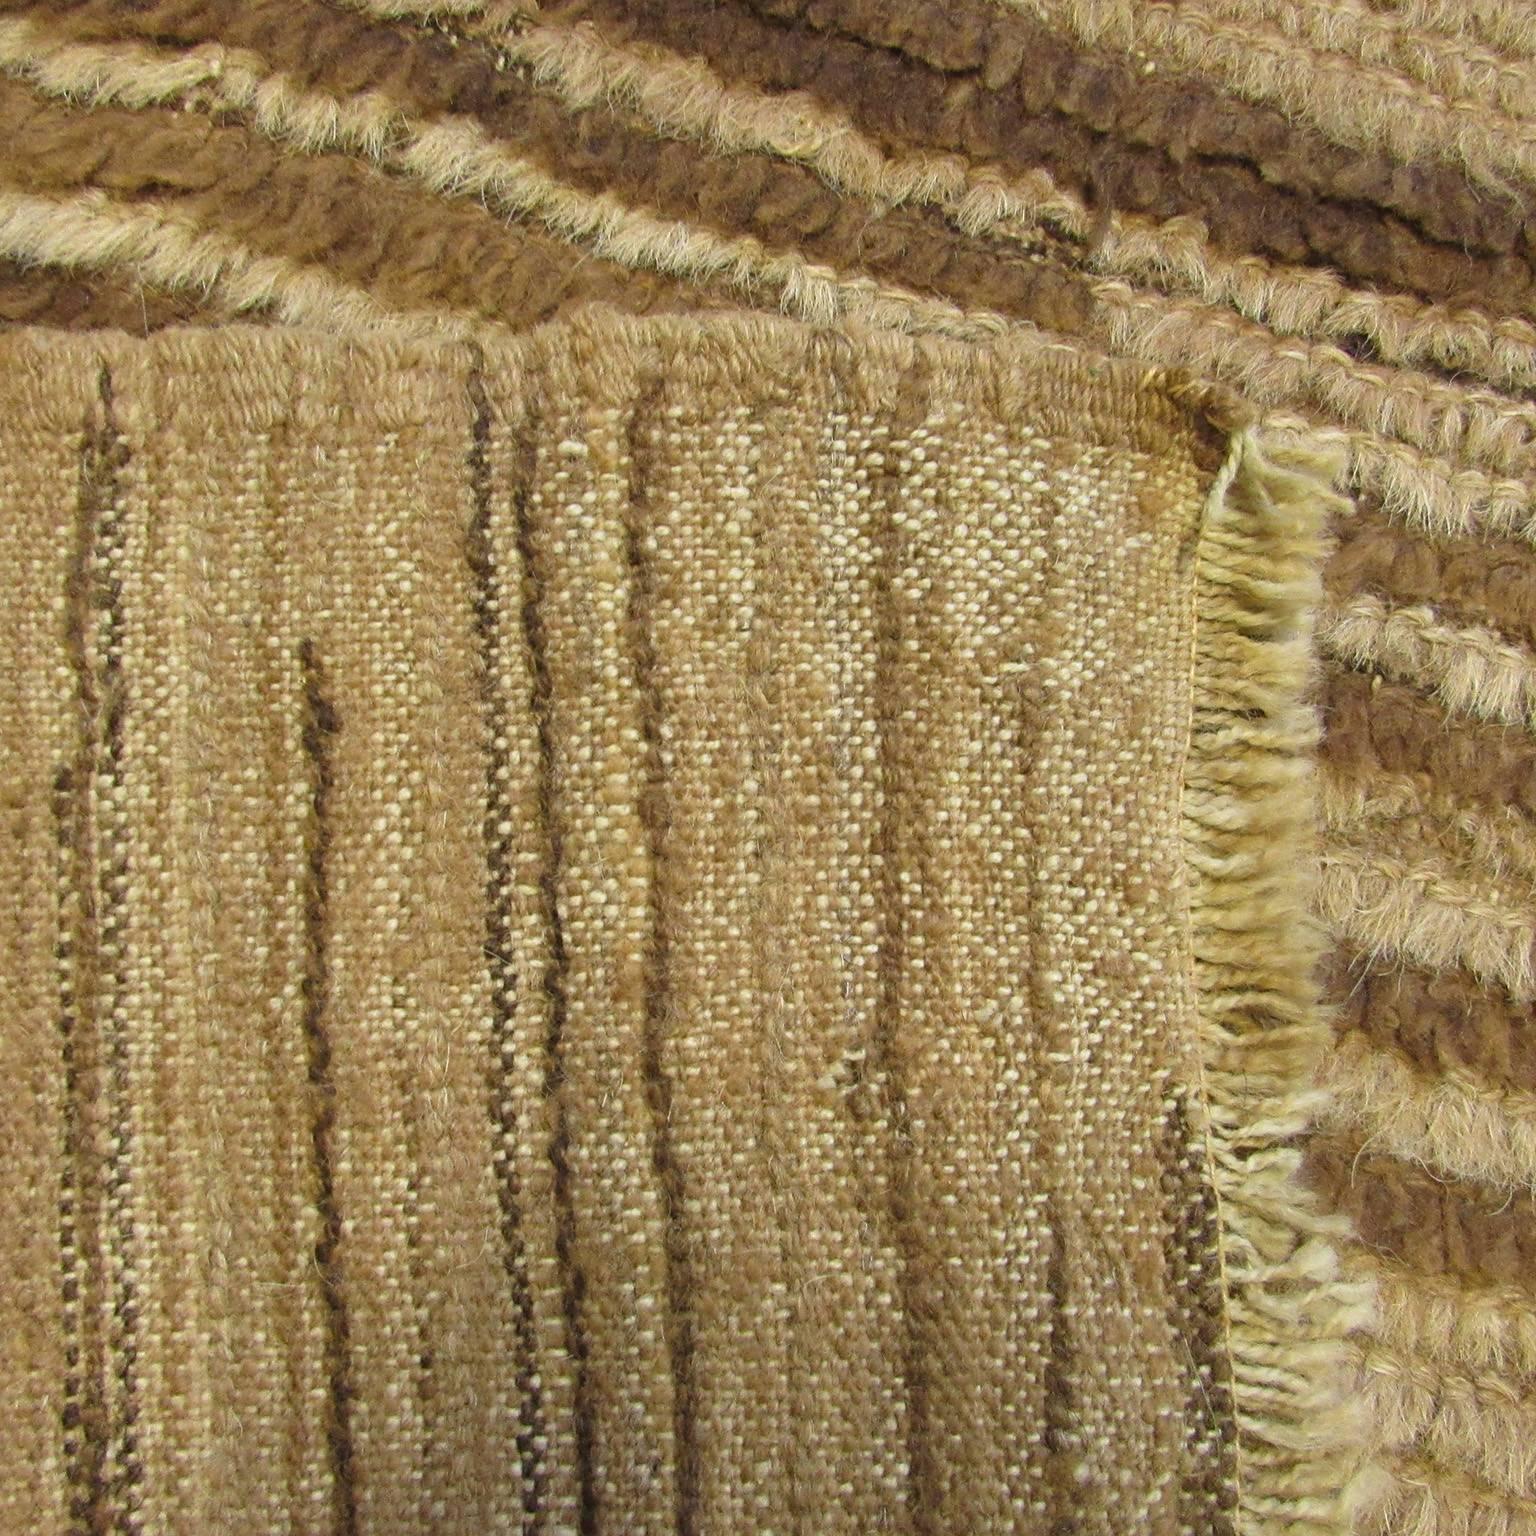 Mid-20th century Turkish Tulu carpet with wonderful wool.
Measures: 6'3